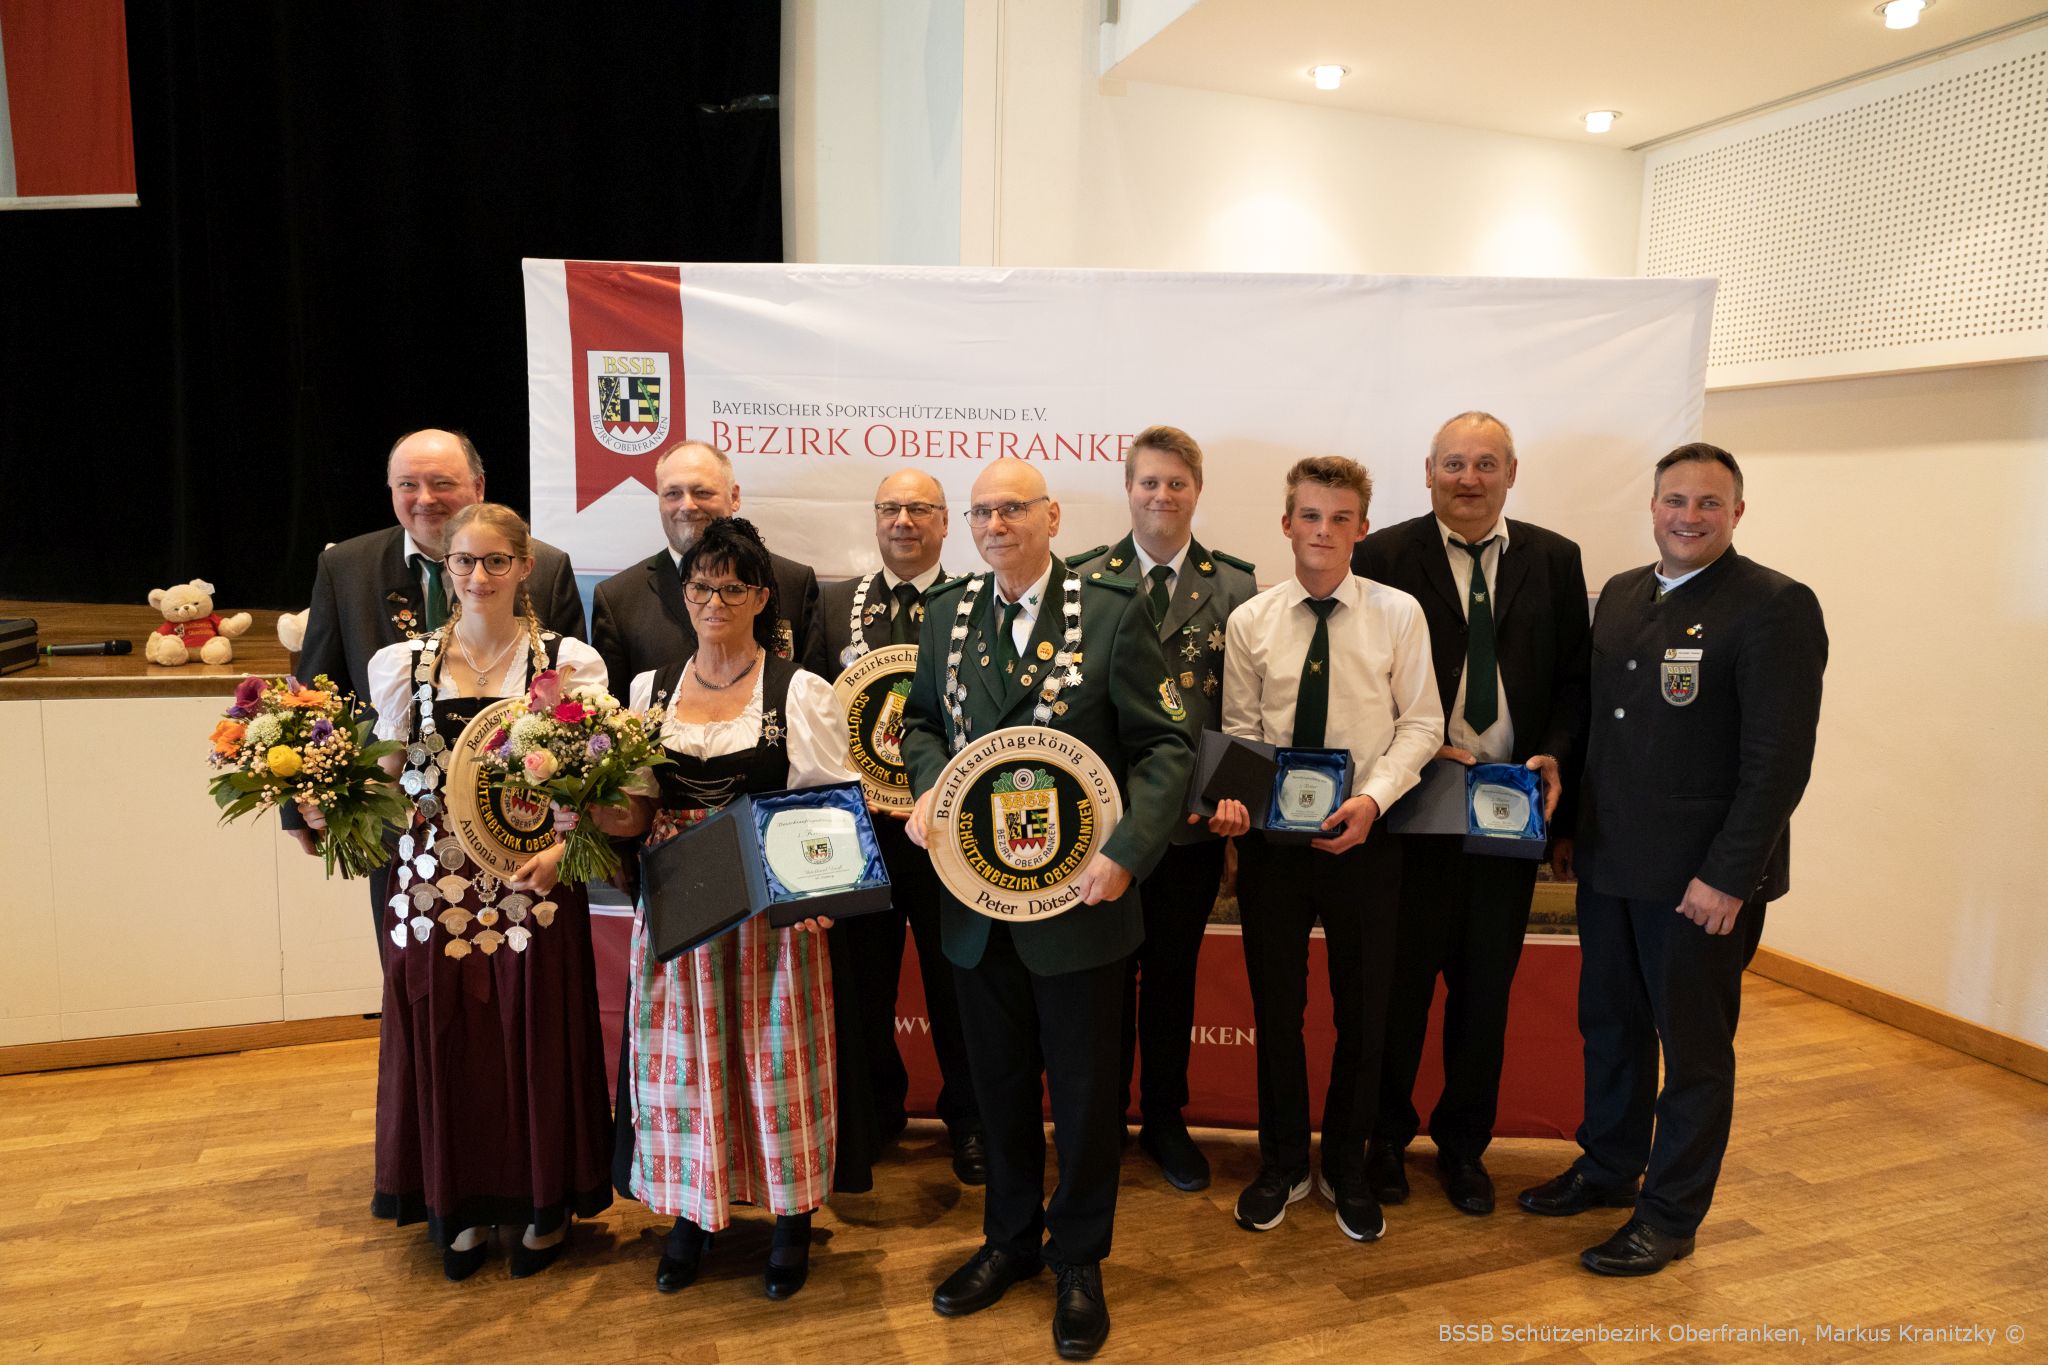 Der 70. Oberfränkische Bezirksschützentag in Bamberg proklammiert das neue Königshaus.